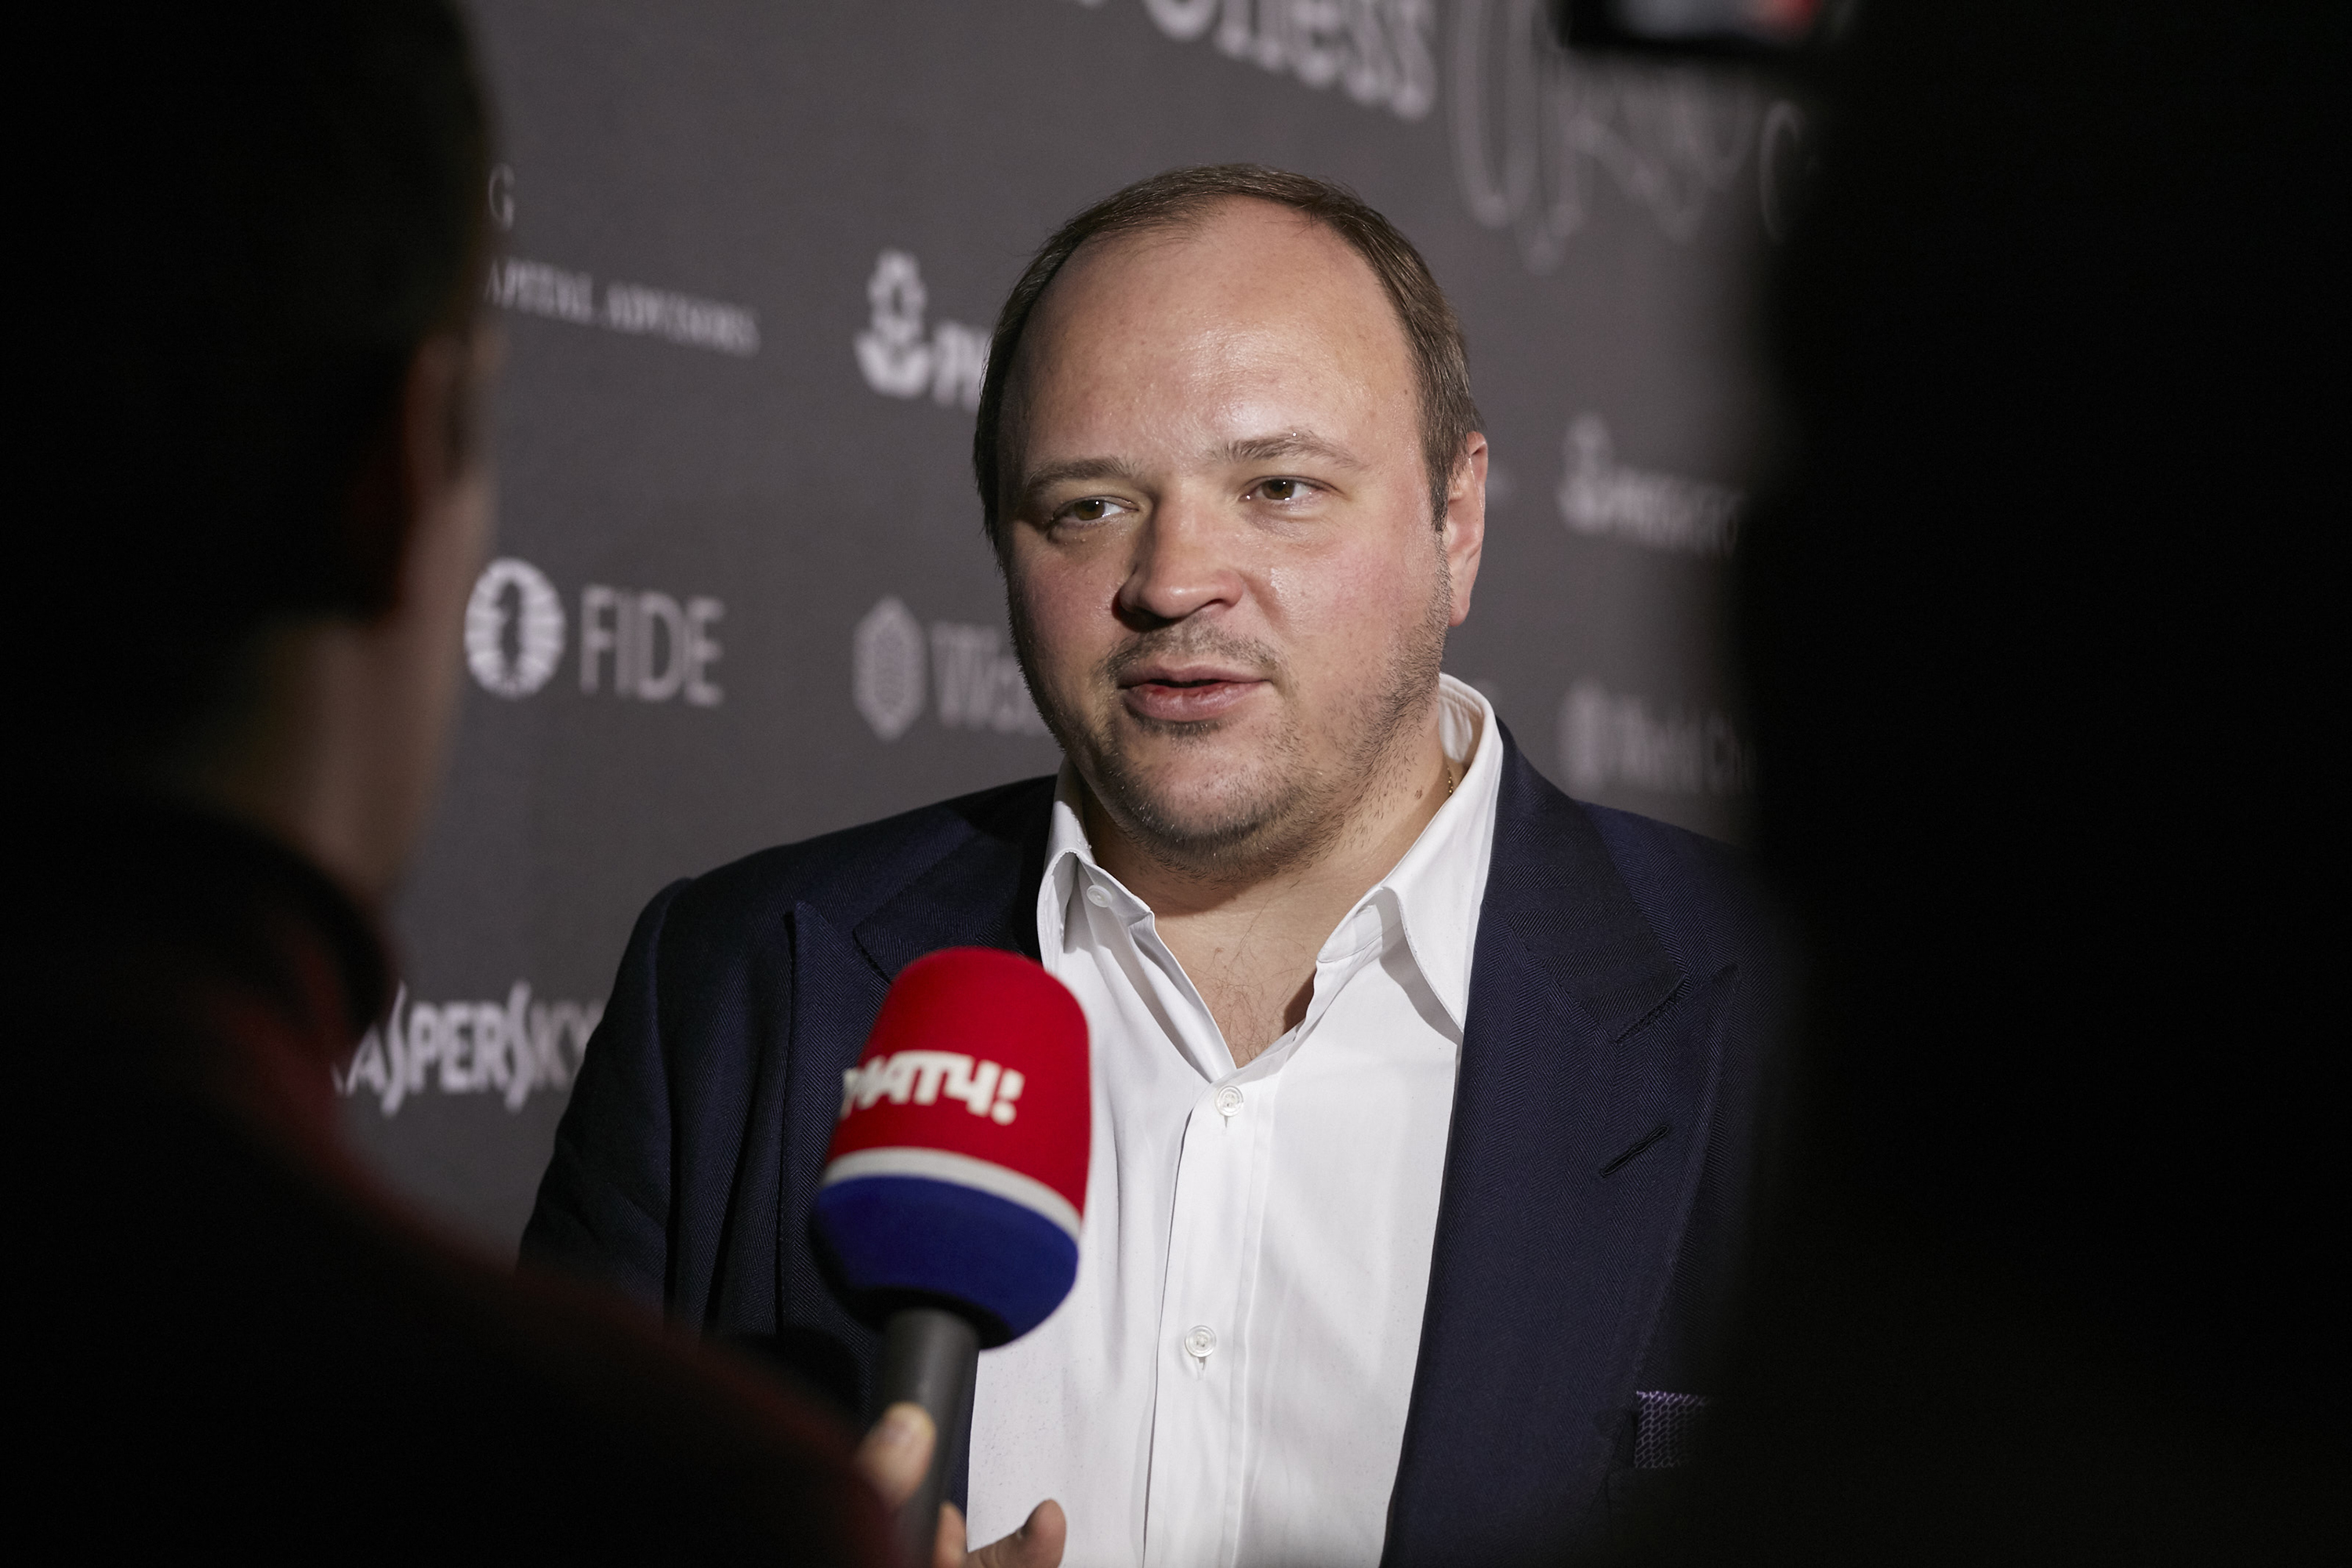 Andrey Grigoryevich Guryev, director ejecutivo de PhosAgro, habla en una entrevista en la conferencia de prensa inaugural durante el Torneo Mundial de Ajedrez el 9 de marzo de 2018 en Berlín, Alemania.